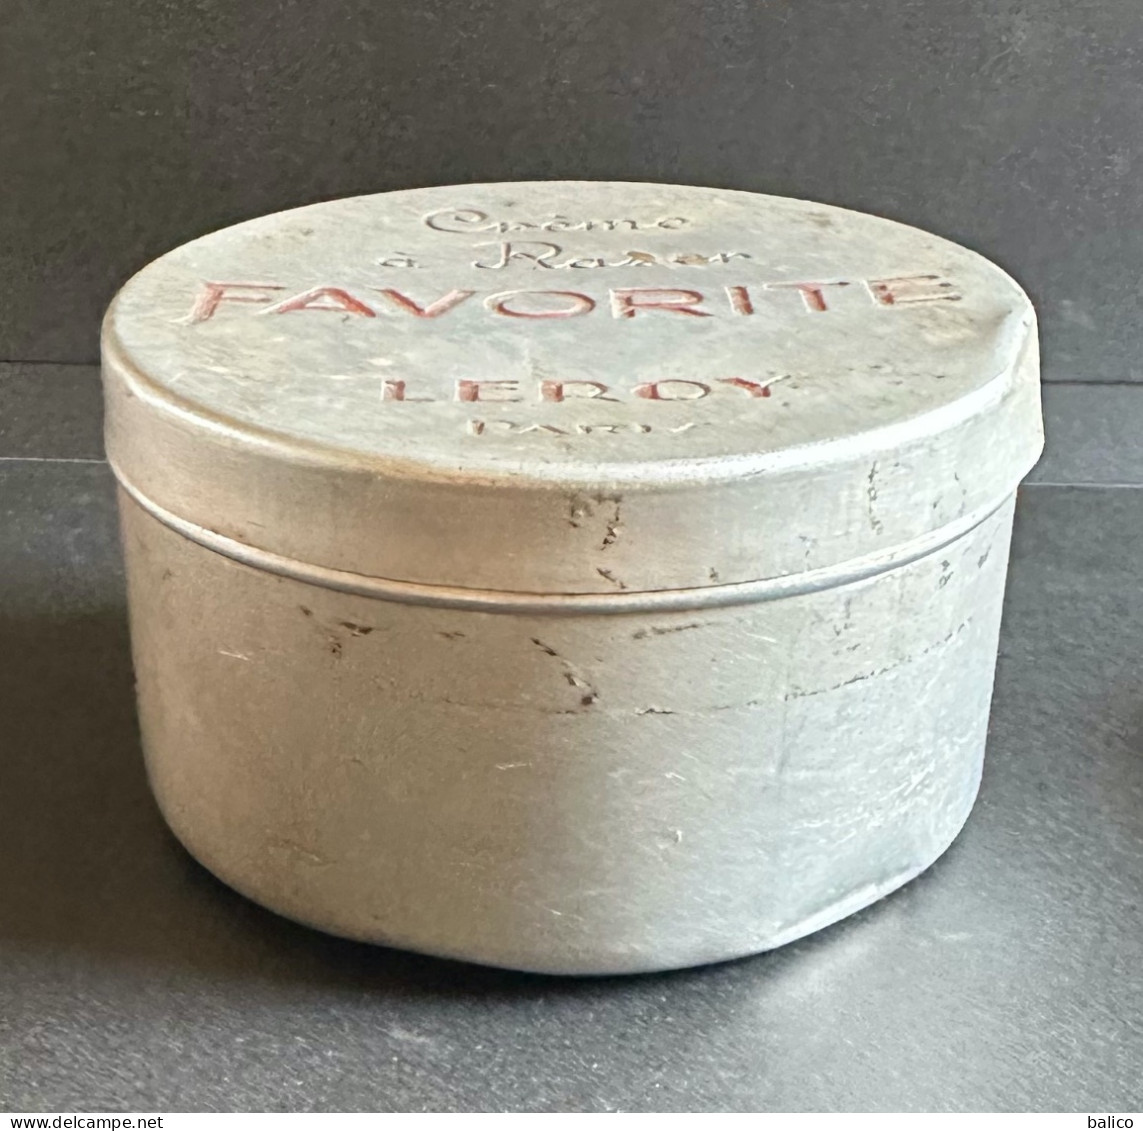 Crème à Raser FAVORITE - LEROY Paris - En Aluminium - Autres & Non Classés